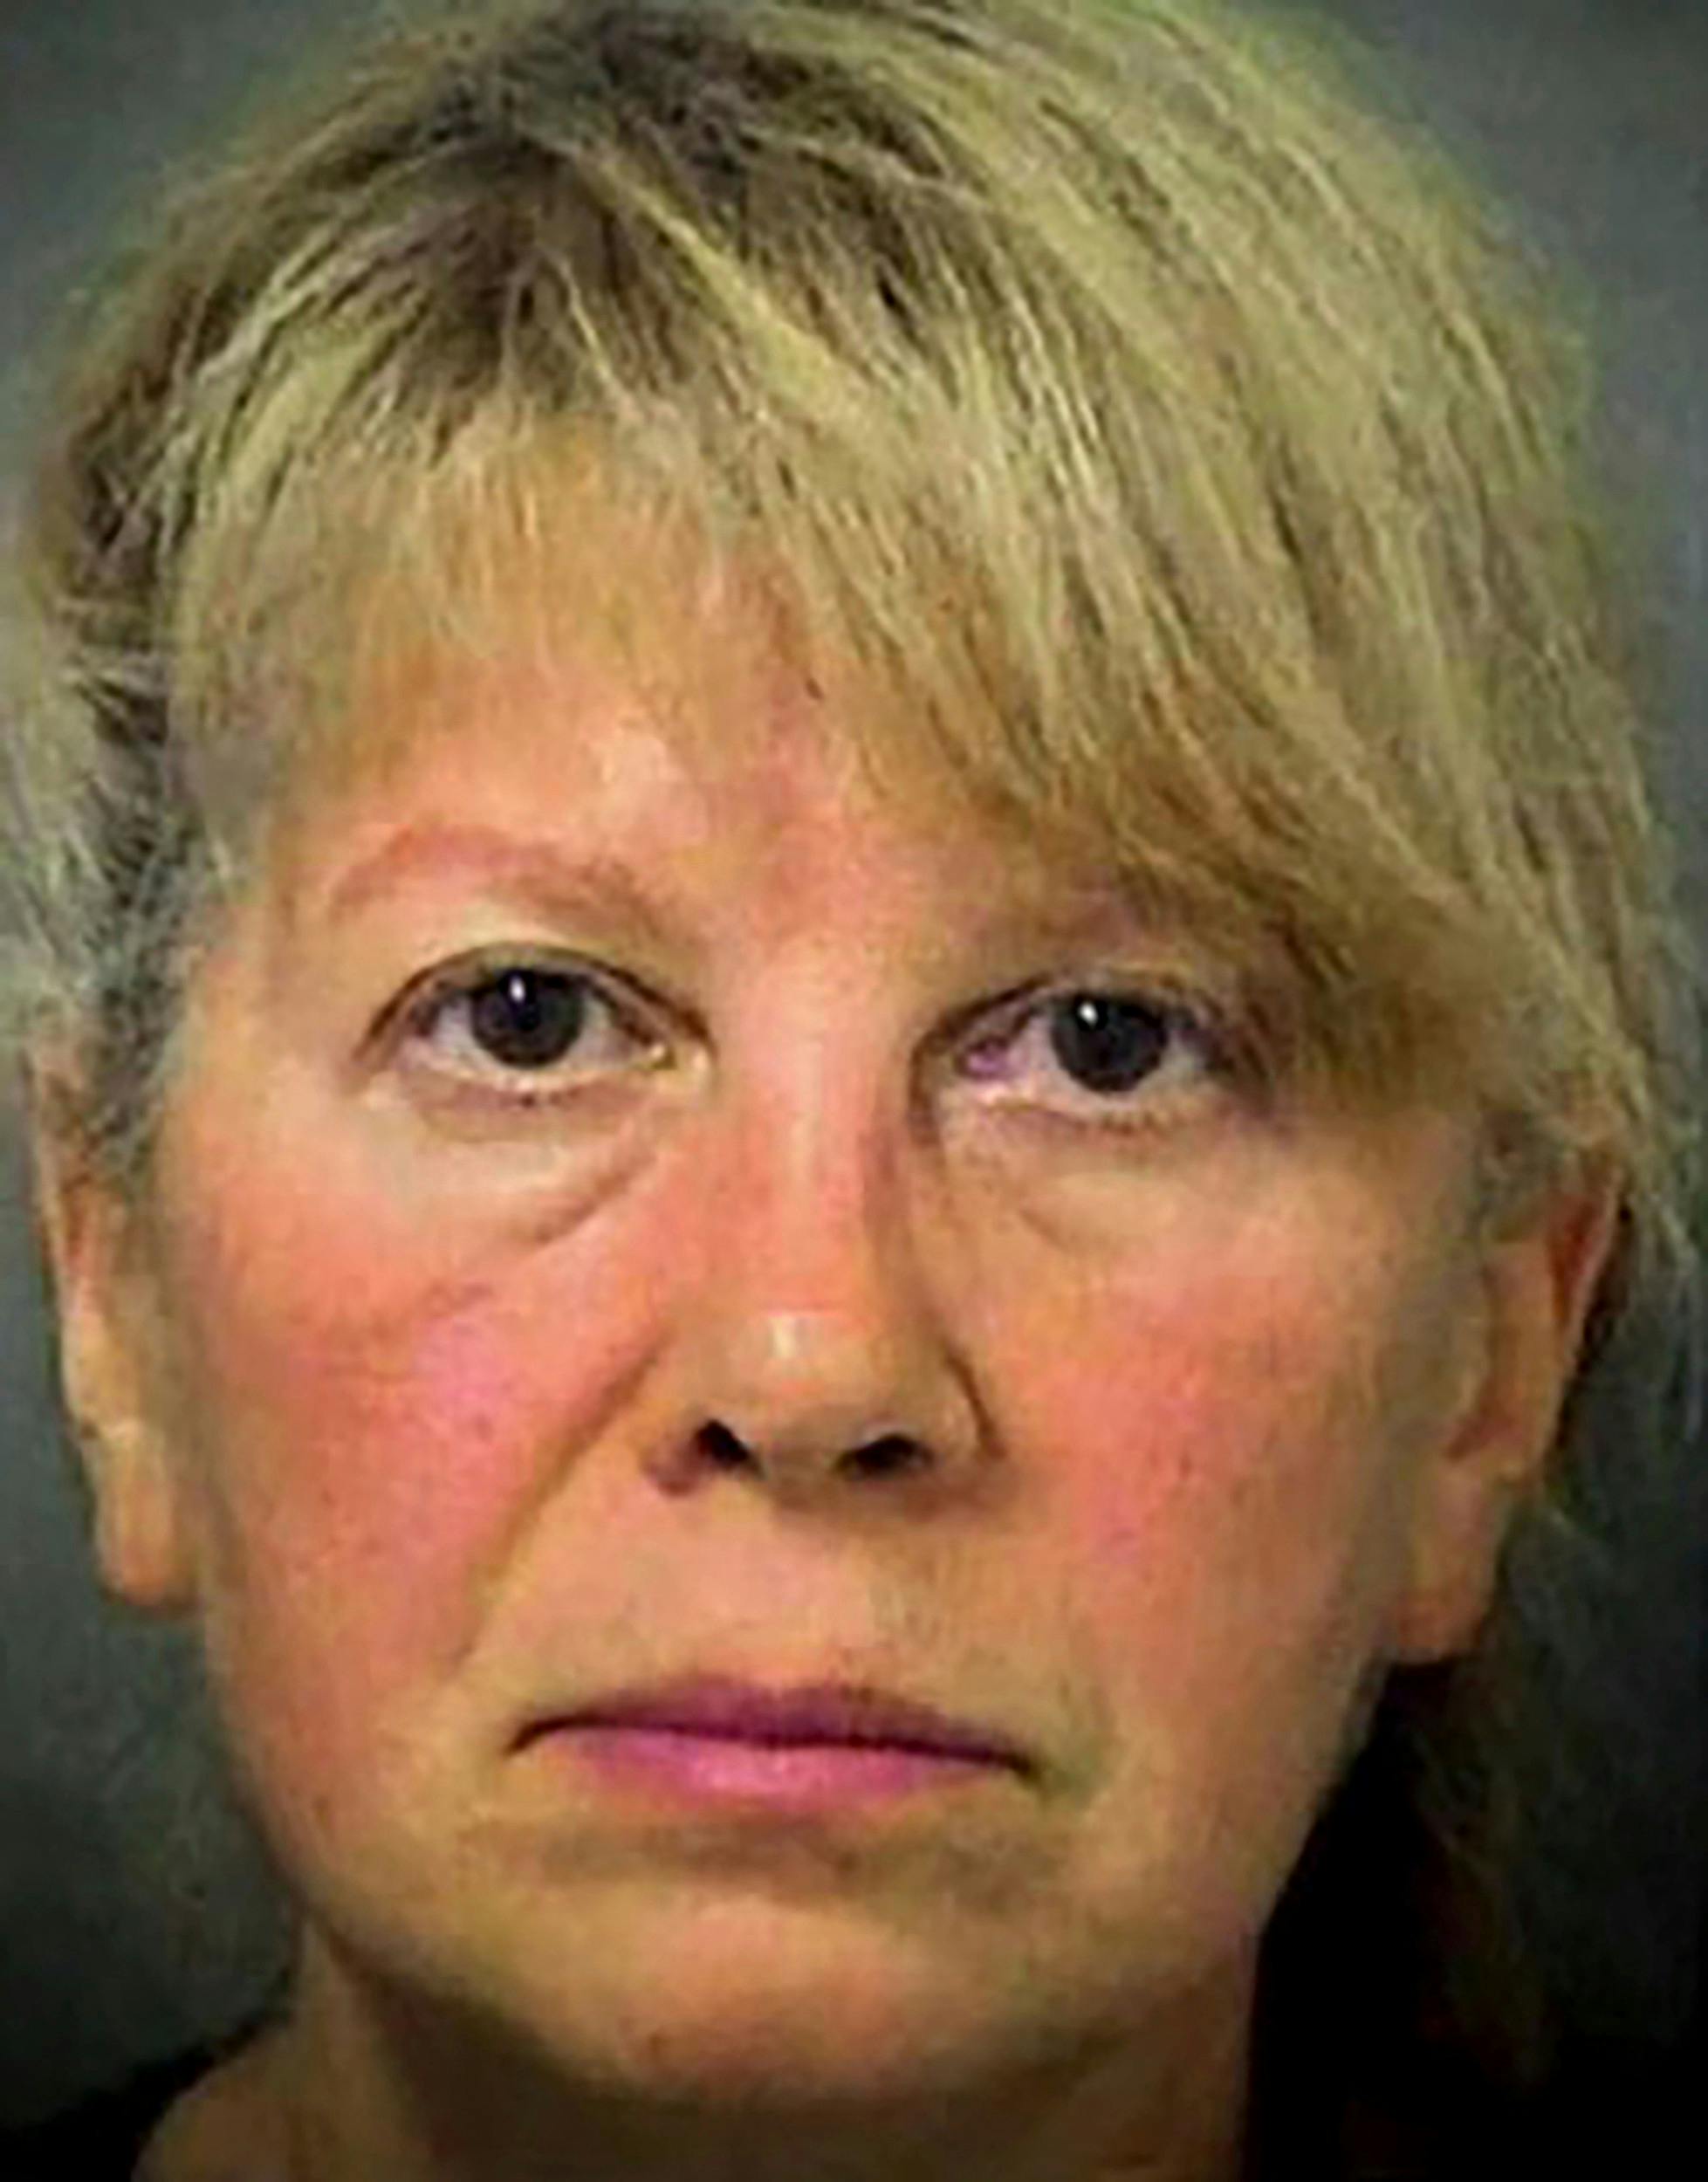 Da Sheila Keen blev anholdt 27 år efter mordet, havde hun skiftet navn til Debbie Warren og farvet sit hår lyst.